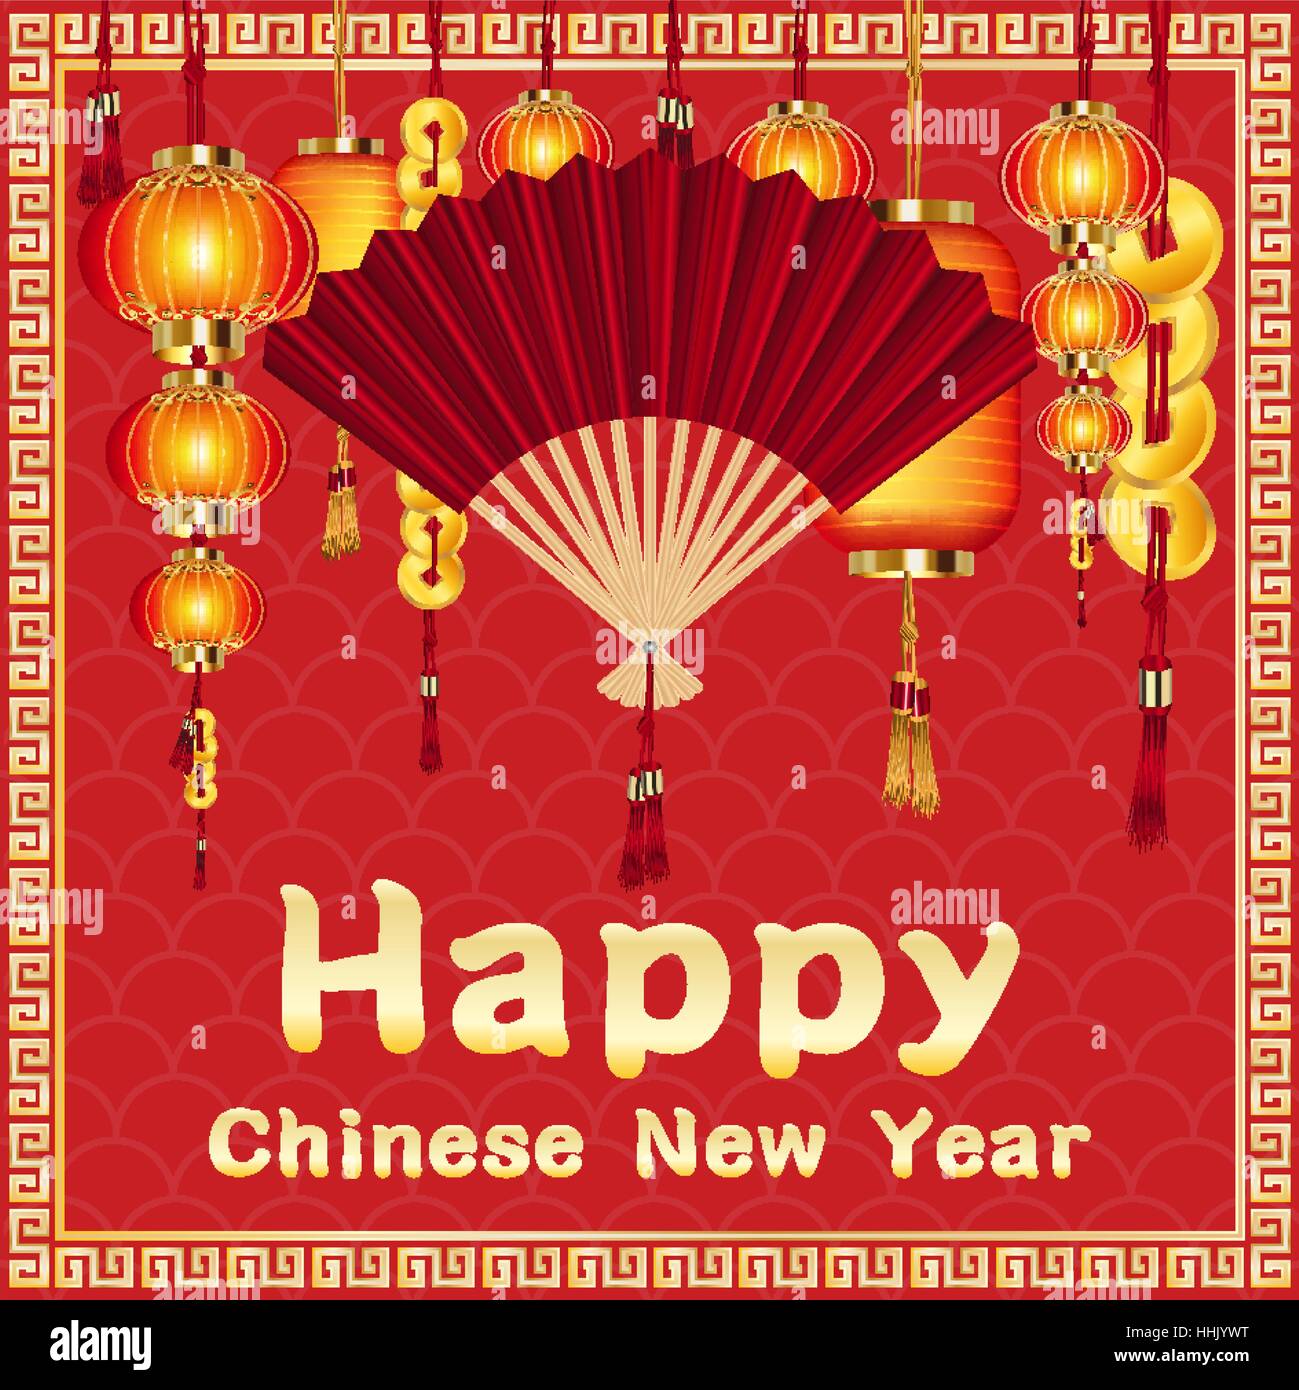 Joyeux Nouvel An chinois avec des lanternes chinoises et ventilateur Illustration de Vecteur